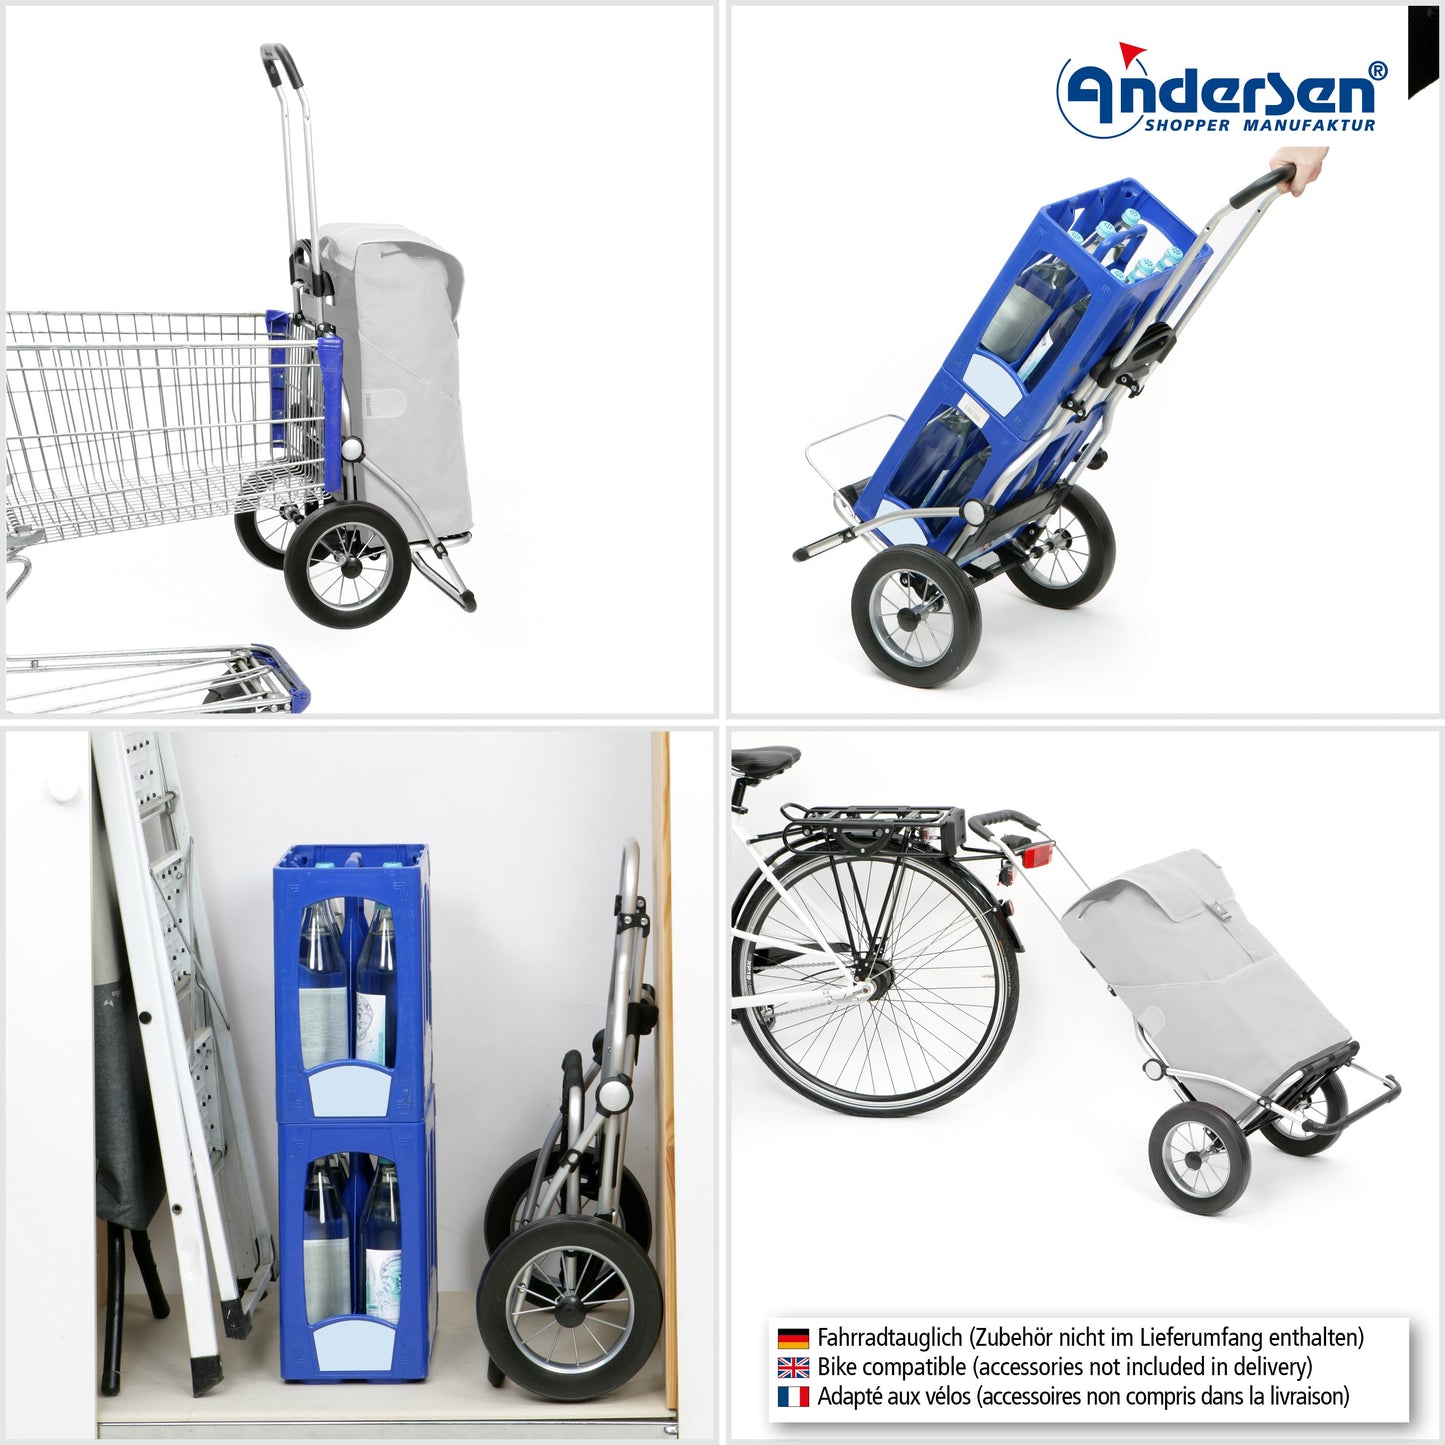 Andersen Shopper Manufaktur-Royal Shopper (Metallspeichenrad 25 cm) Famke blau-www.shopping-trolley.ch-bild4